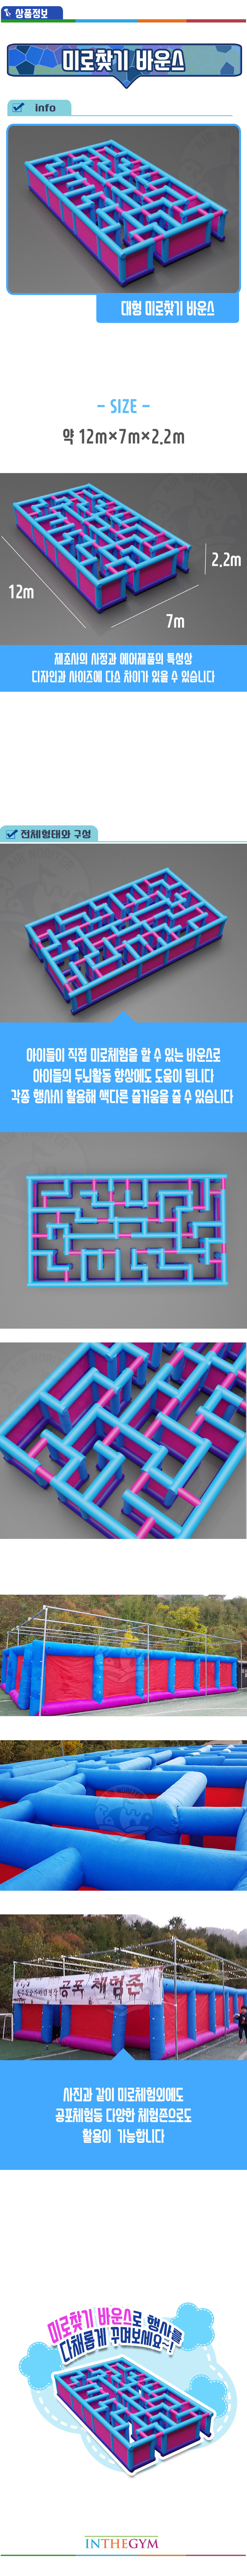 maze-finding-bounce_shop1_174906.jpg